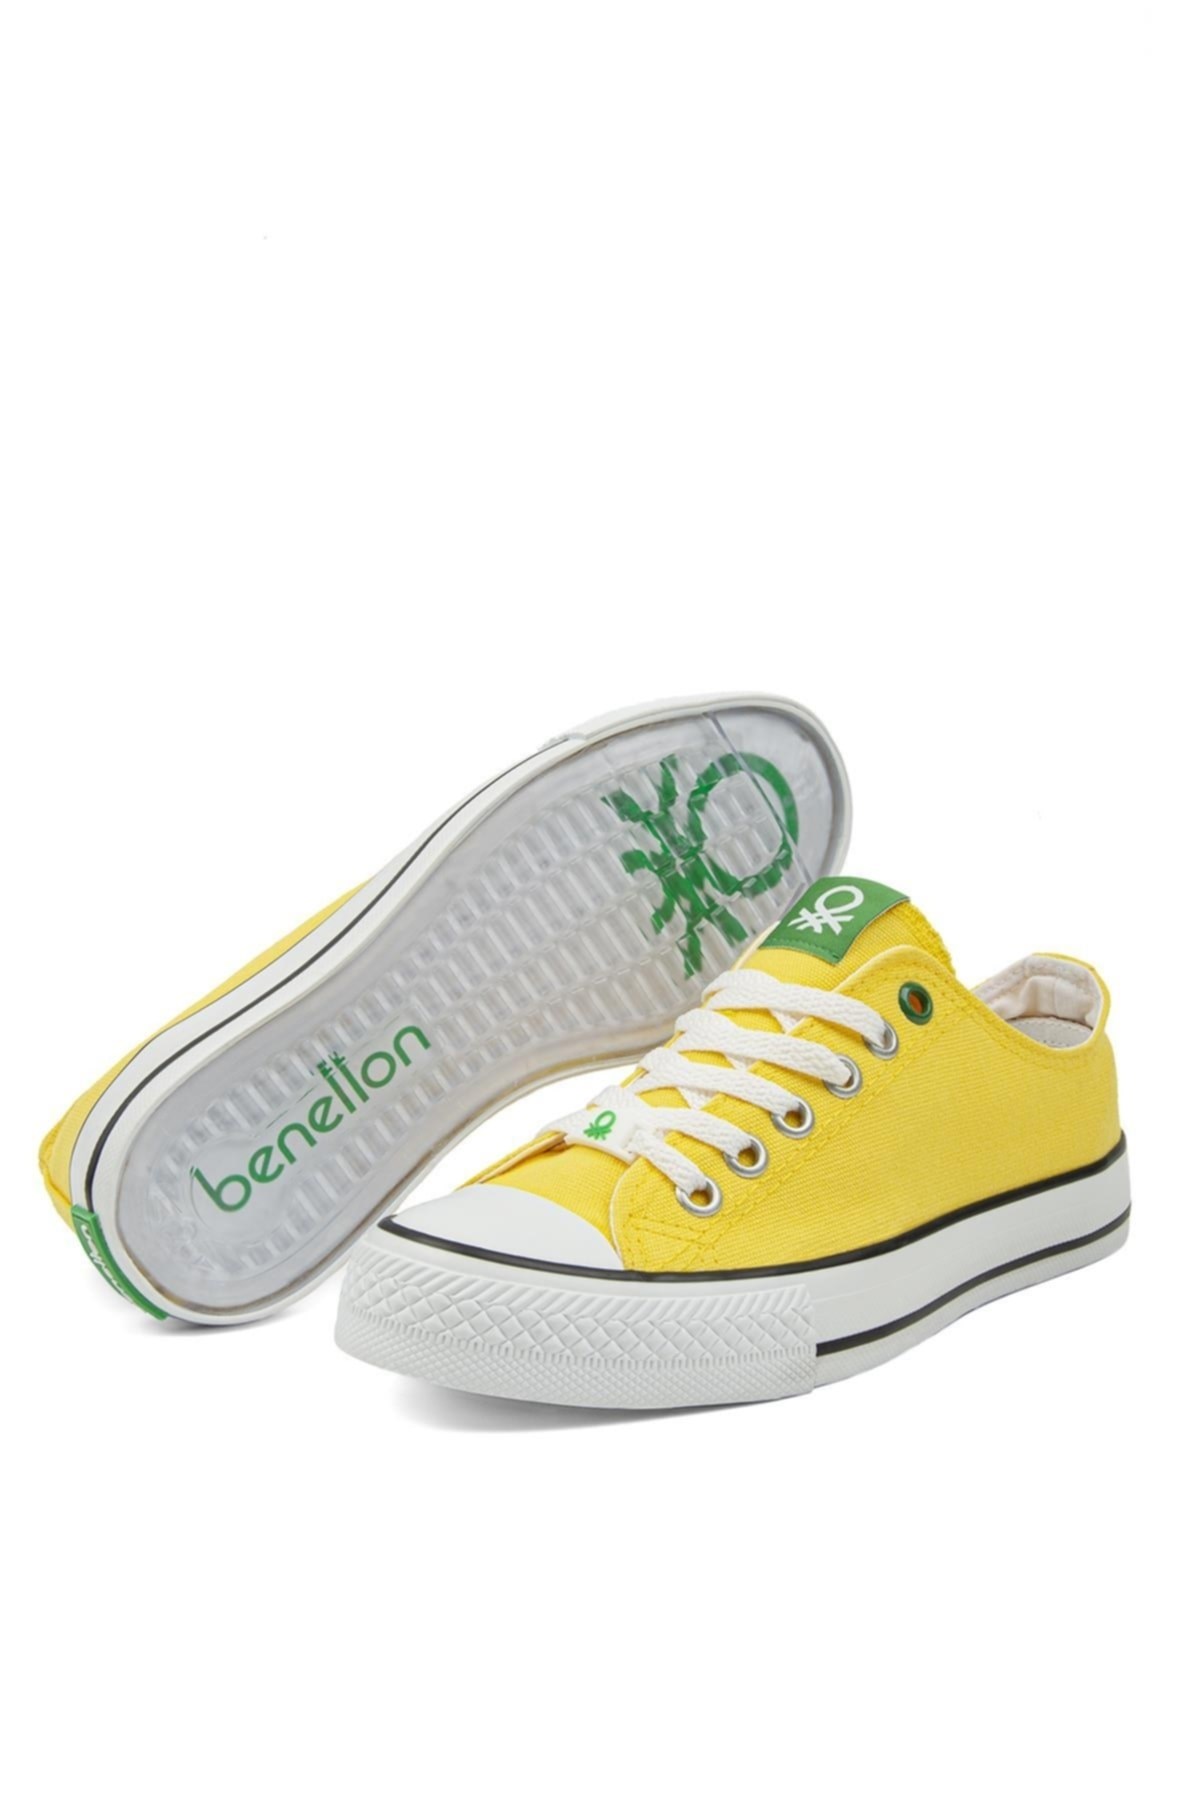 Benetton Kadın Ayakkabı BN-30196 33-Sari